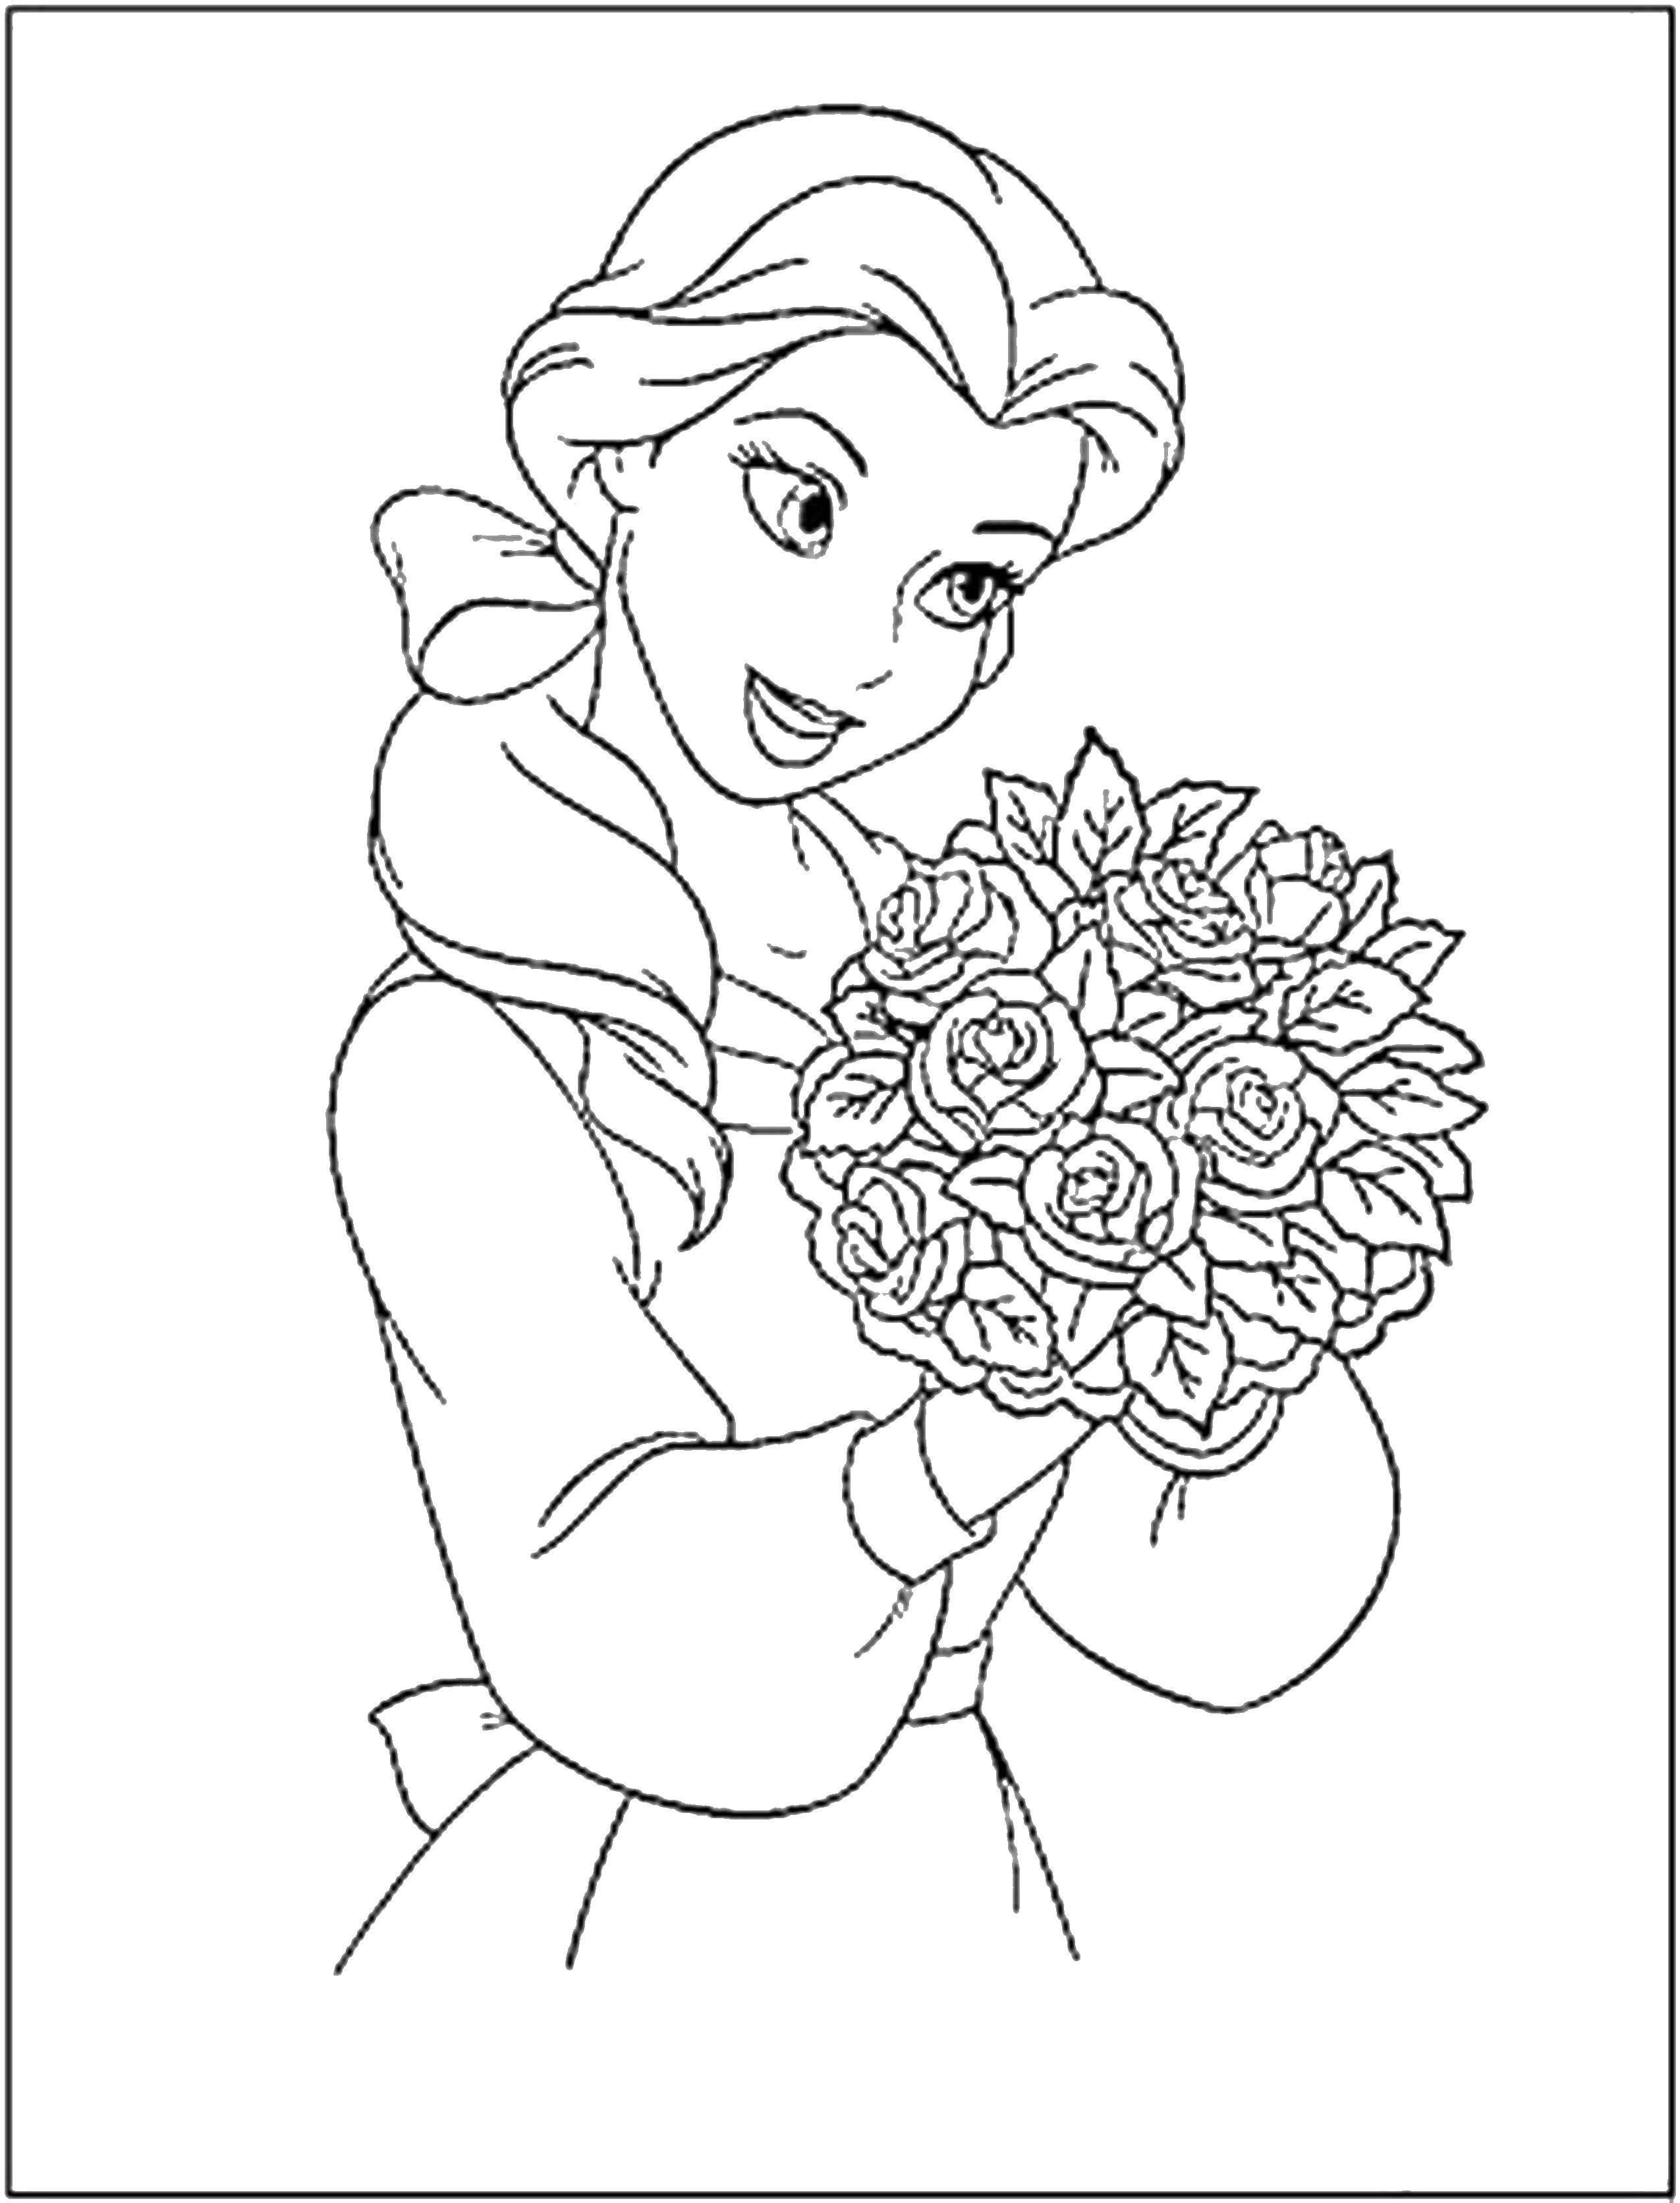 Название: Раскраска Красивая принцесса с букетом роз. Категория: Принцессы. Теги: принцессы, цветы, розы.